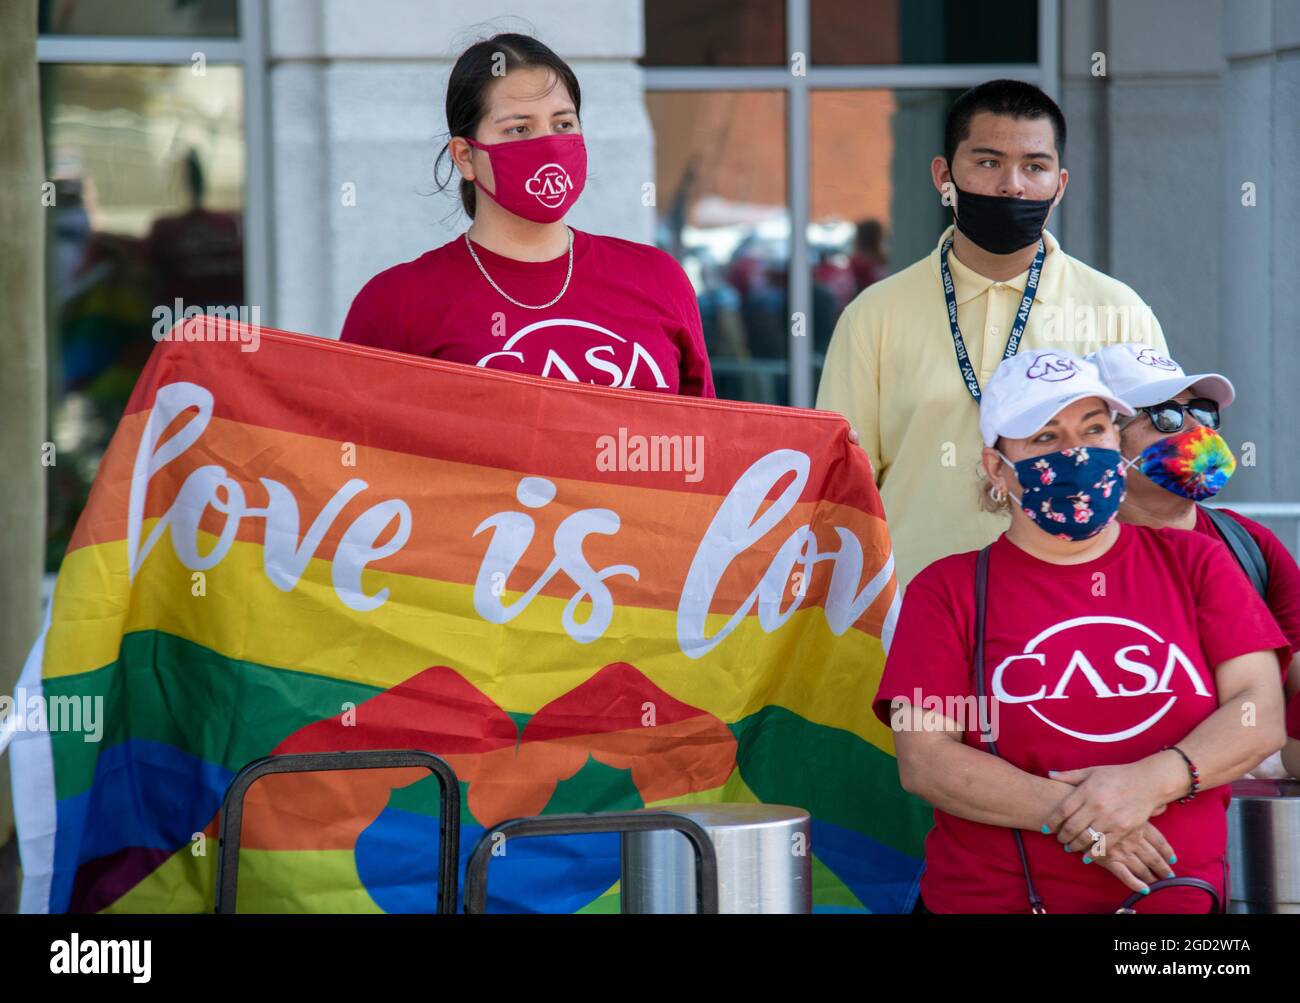 Mitglieder der CASA, einer Basisorganisation für Immigranten, protestieren am 10. August 2021 am Hauptsitz der US-Einwanderungs- und Zollbehörde in Washington, DC, gegen eine Einwanderungsreform. (Foto: Matthew Rodier/Sipa USA) Quelle: SIPA USA/Alamy Live News Stockfoto